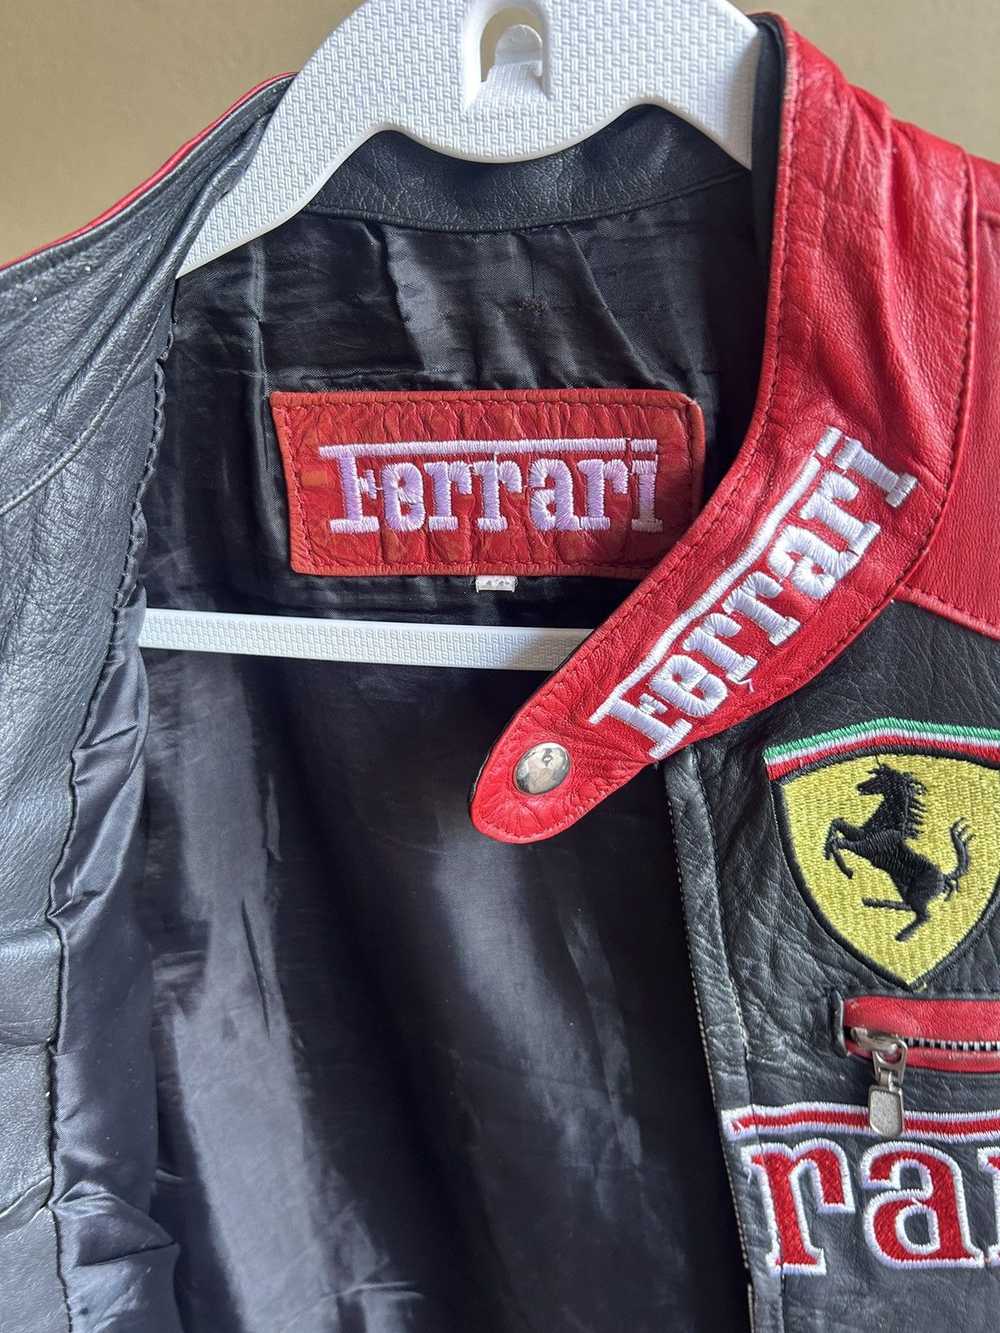 Ferrari × Vintage Vintage Ferrari leather jacket - image 5